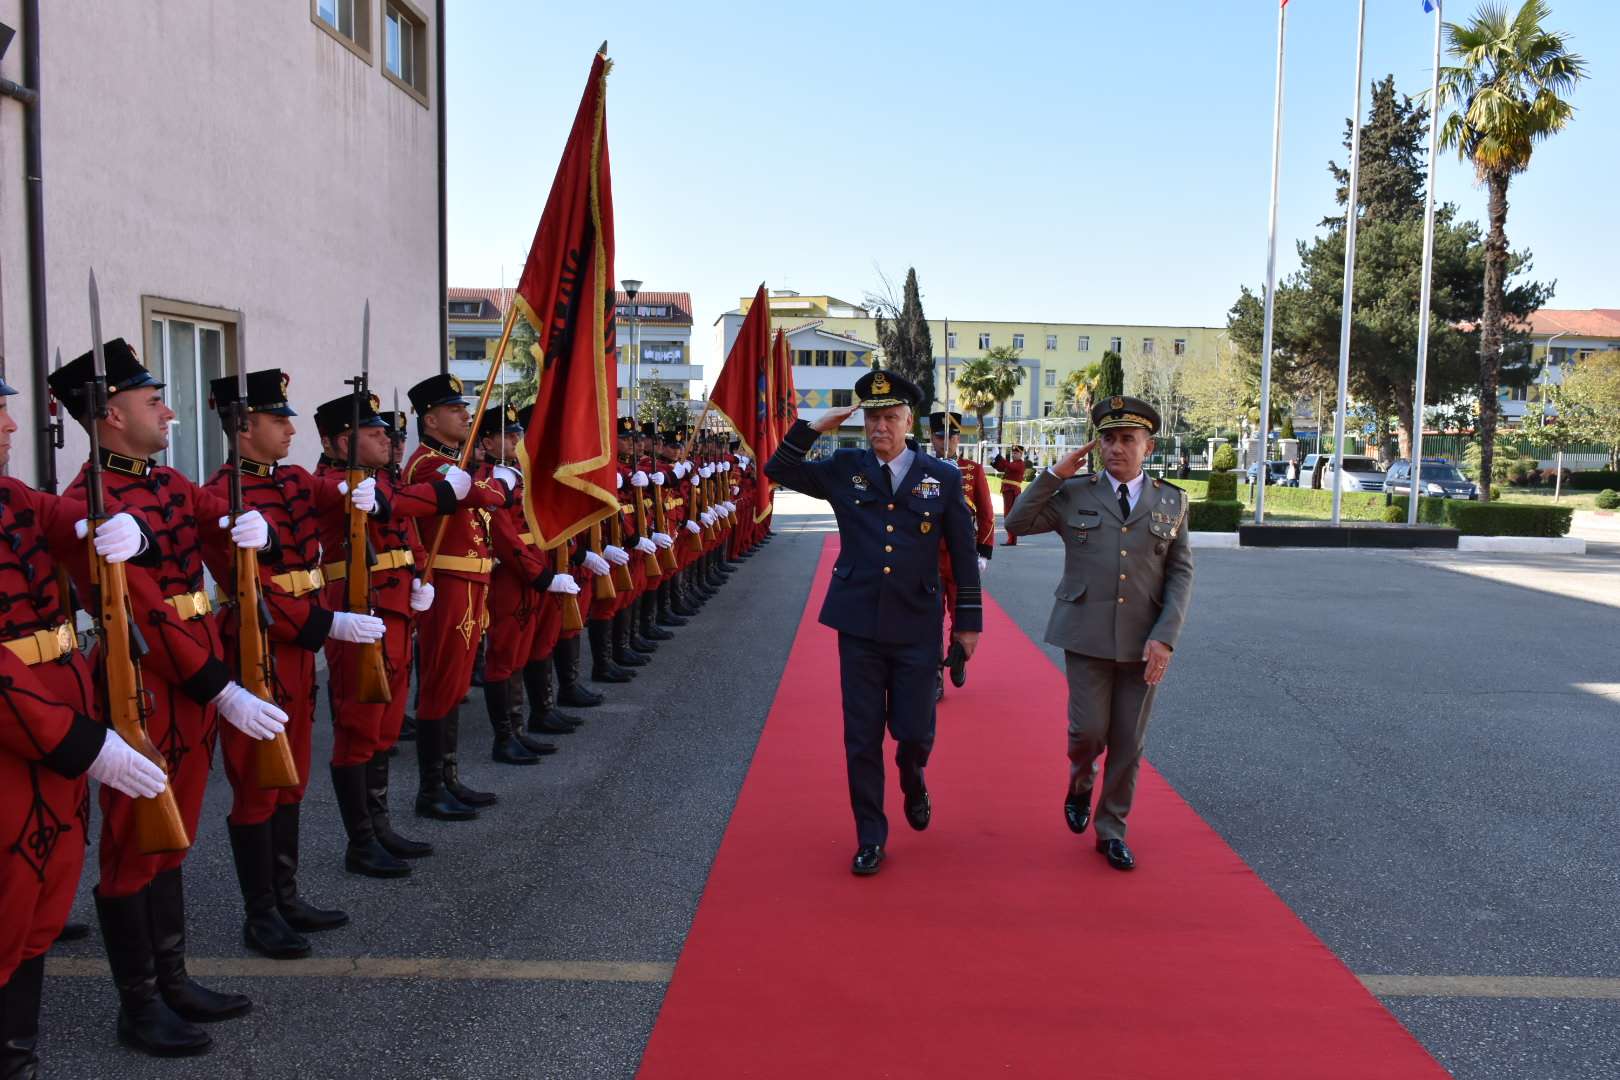 Î‘Ï€Î¿Ï„Î­Î»ÎµÏƒÎ¼Î± ÎµÎ¹ÎºÏŒÎ½Î±Ï‚ Î³Î¹Î± military parade in Tirana 2019